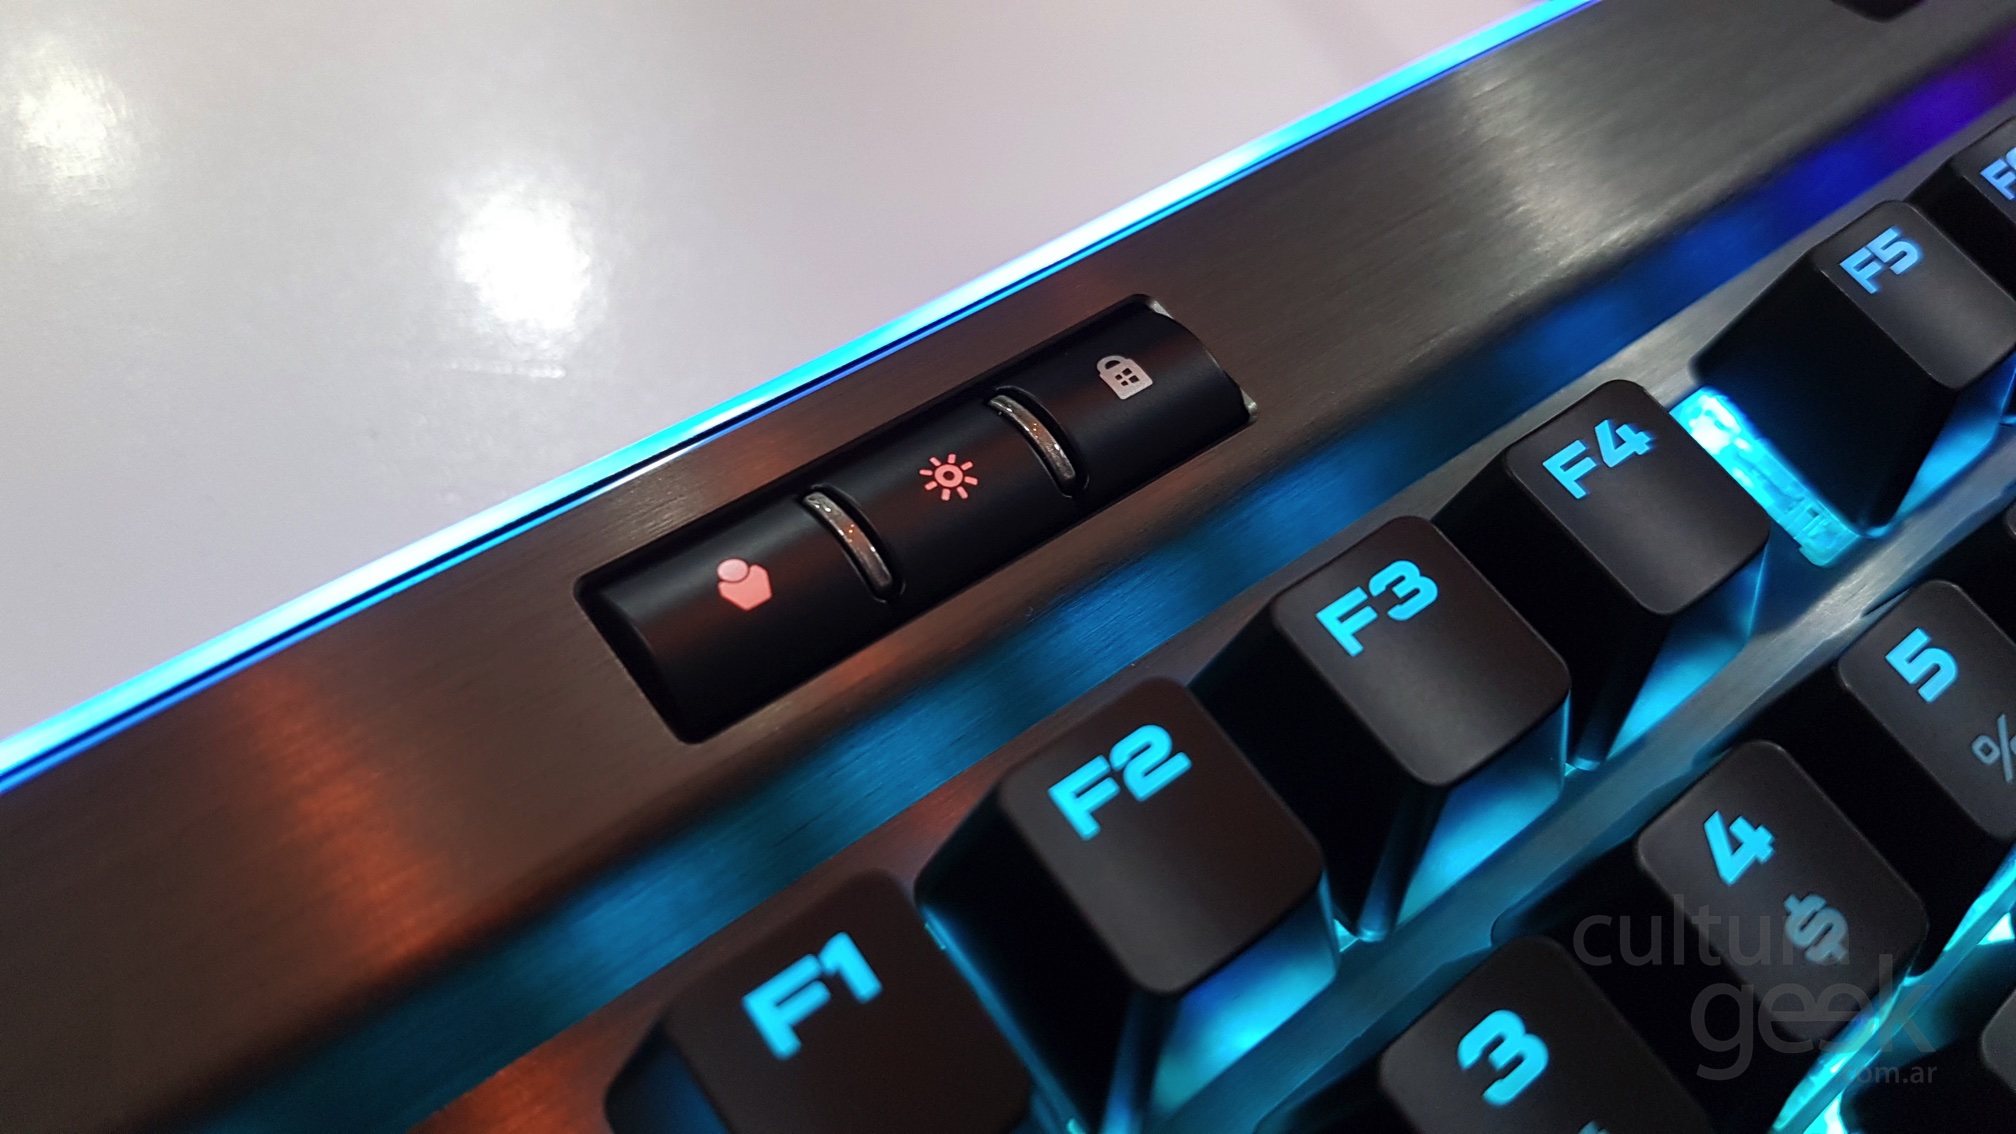 Review: ¿El MEJOR teclado mecánico gama alta CALIDAD-PRECIO RGB?, 2017